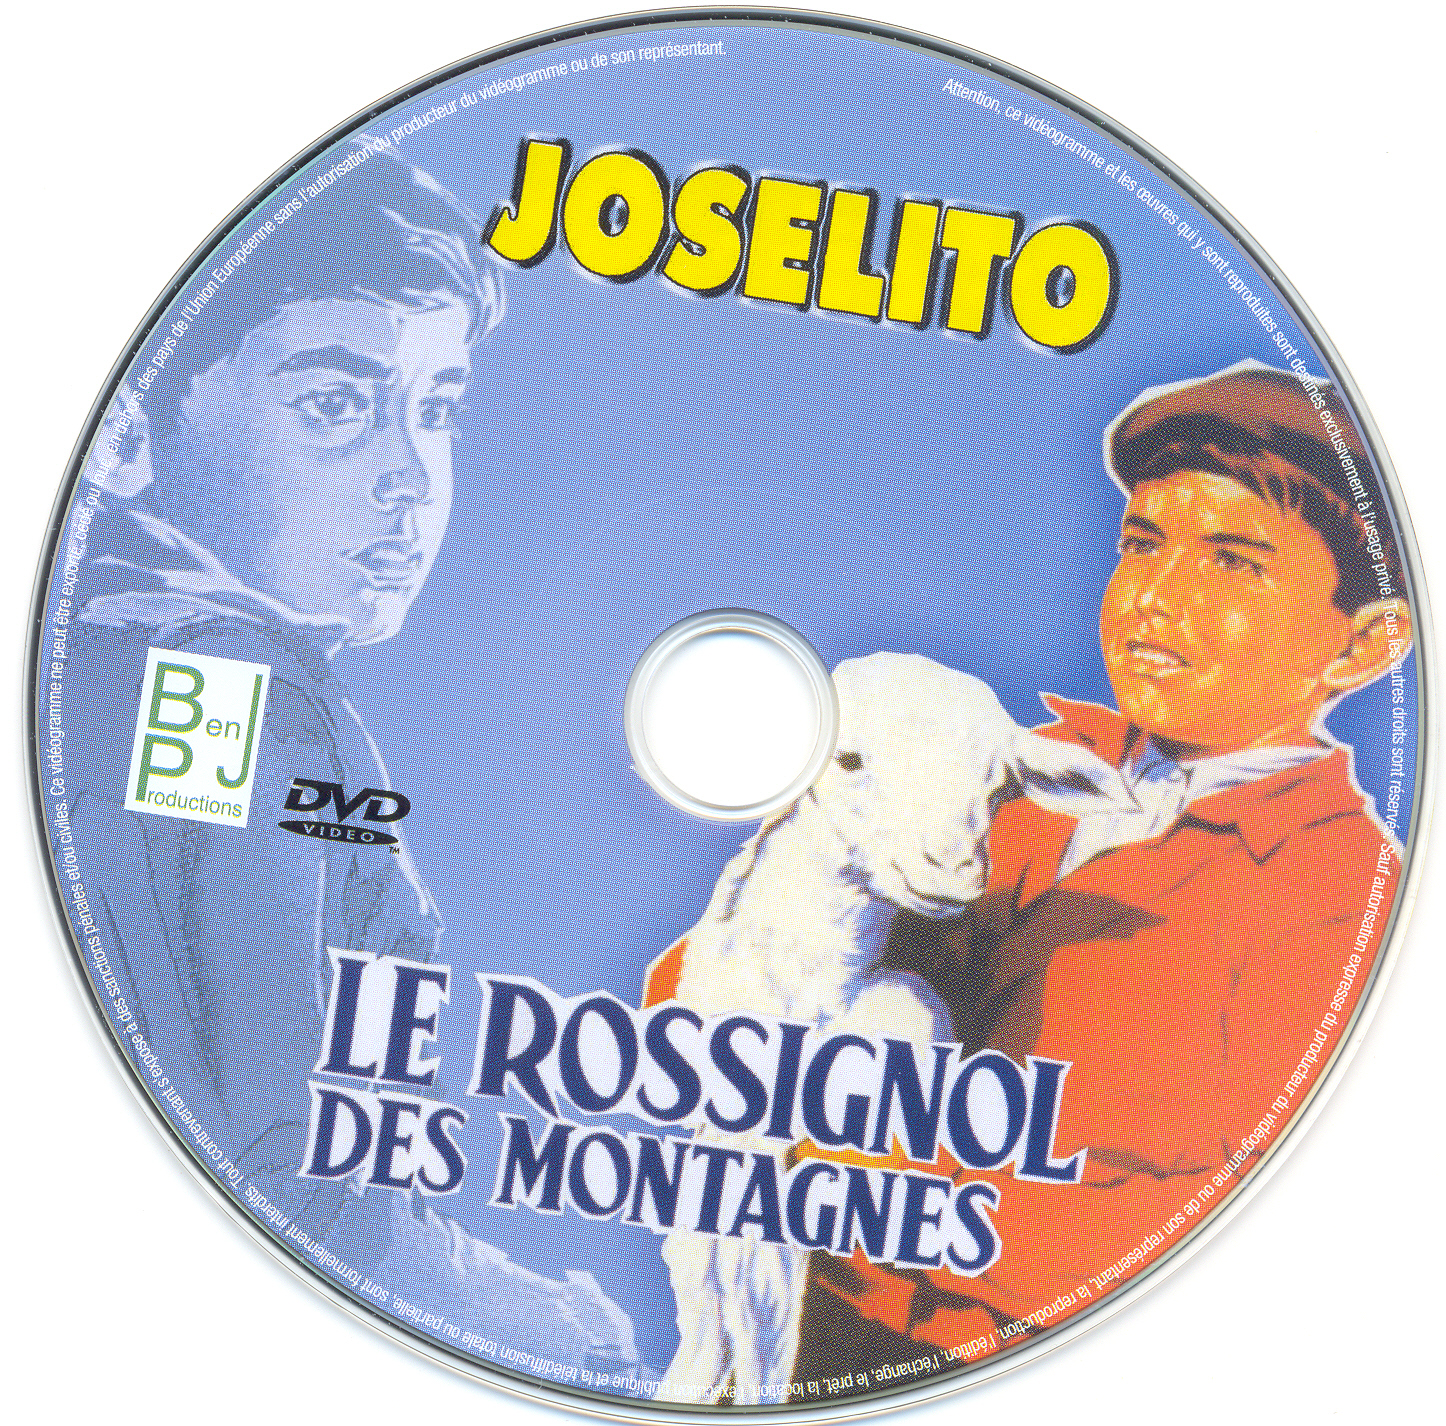 Joselito - Le rossignol des montagnes